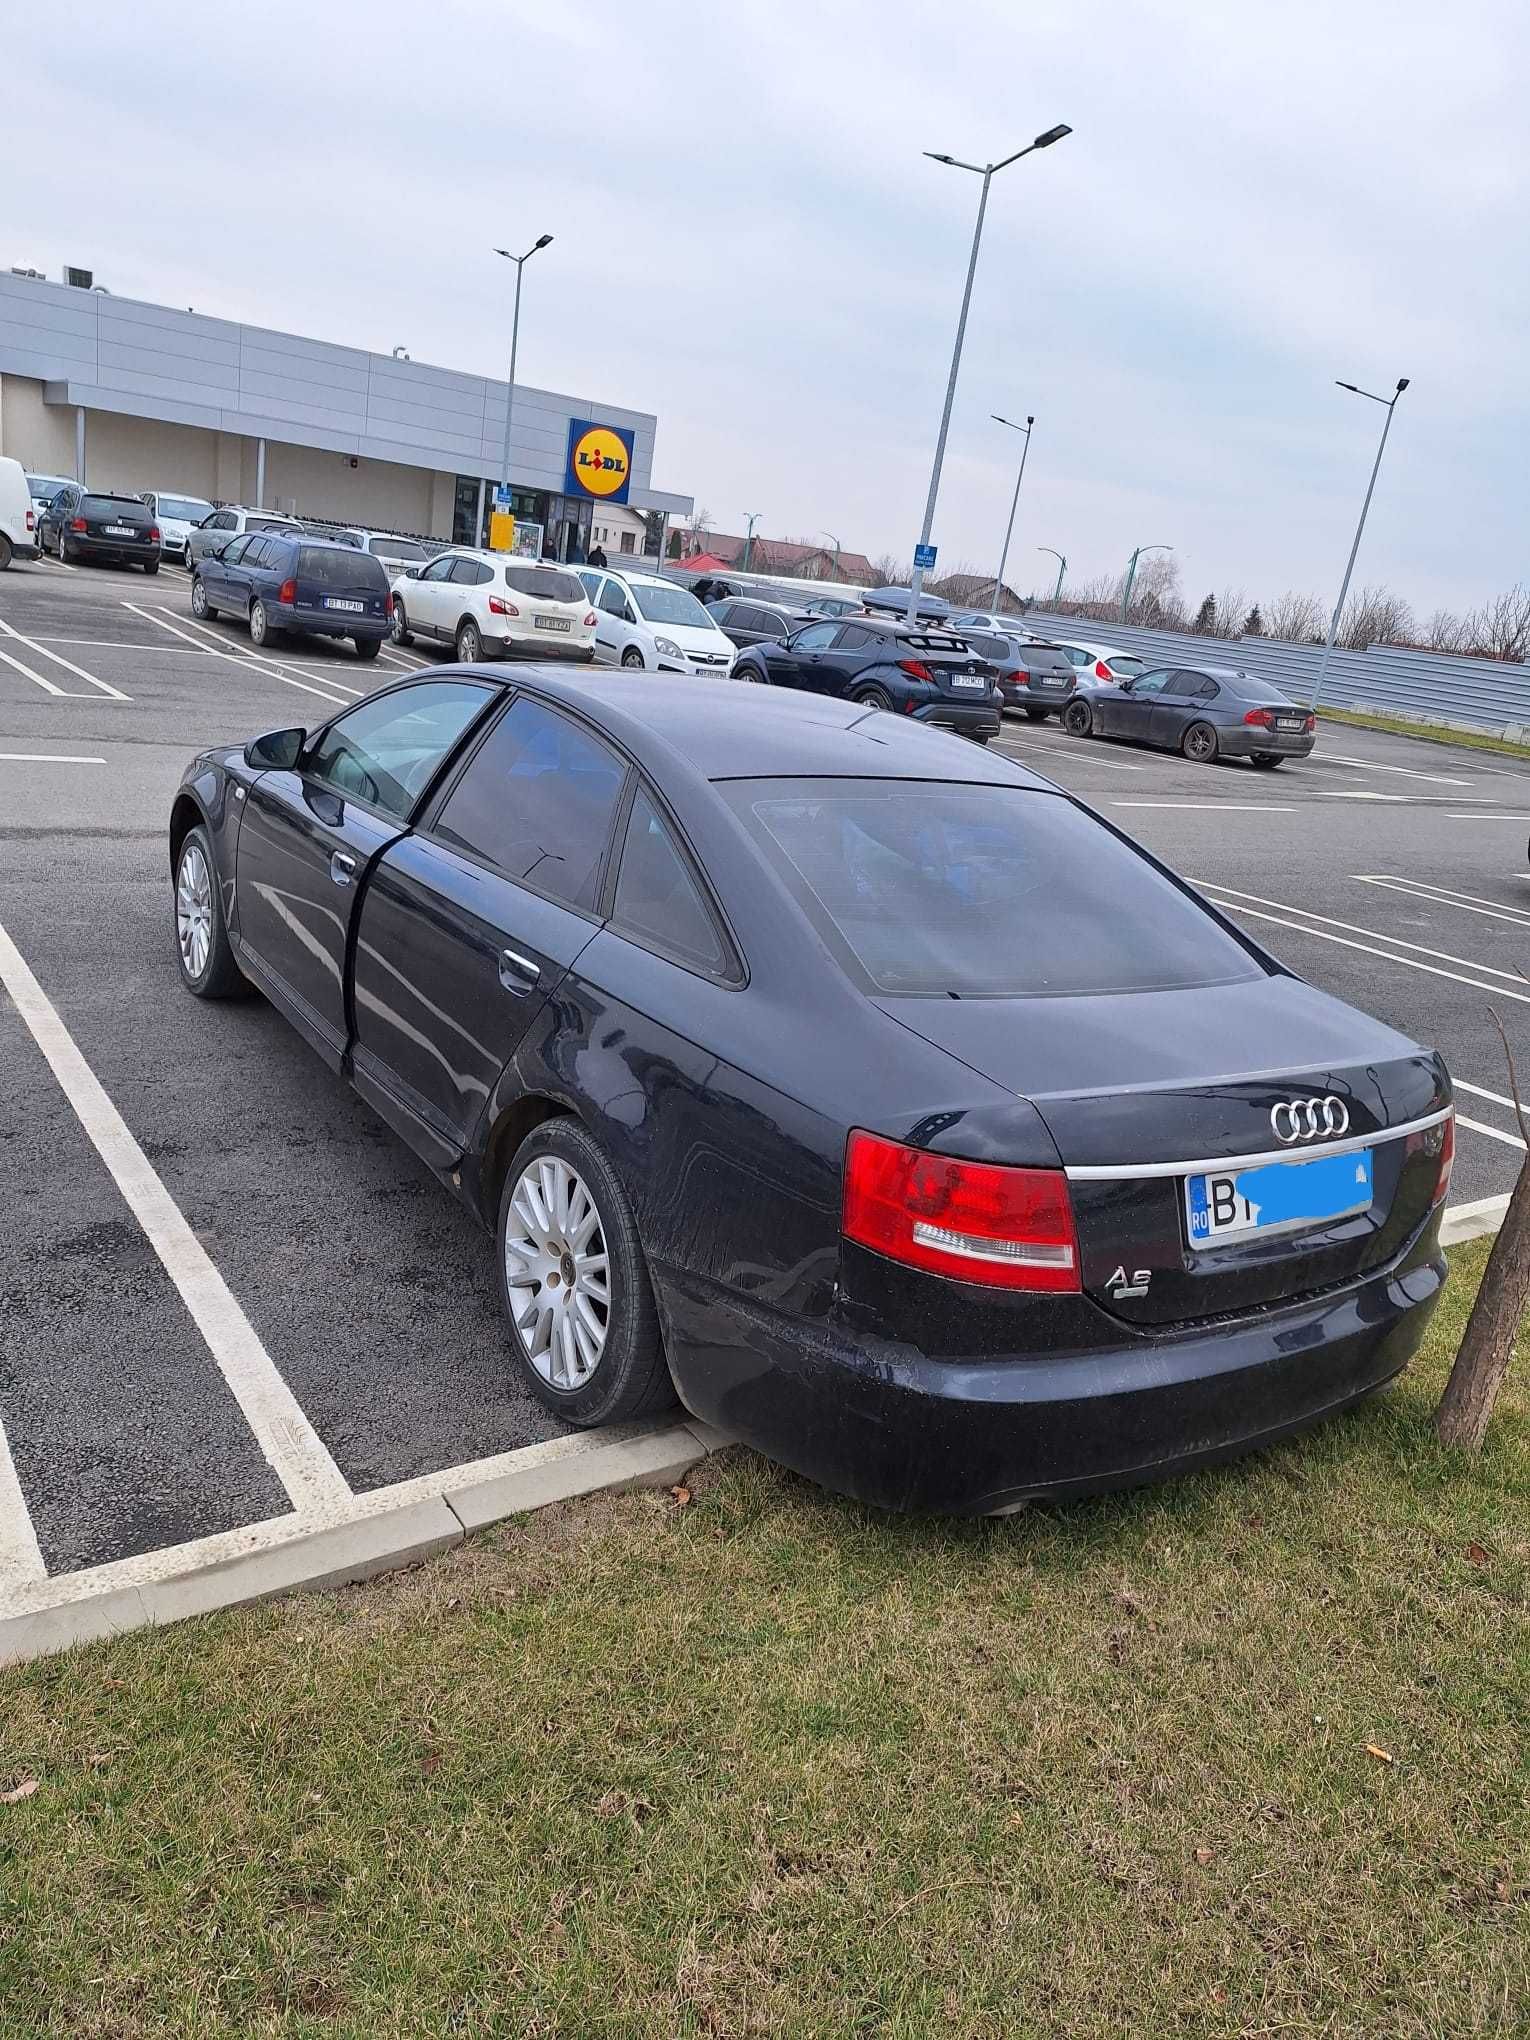 Audi a6 c6 din 2006 preț 4000 euro negociabil